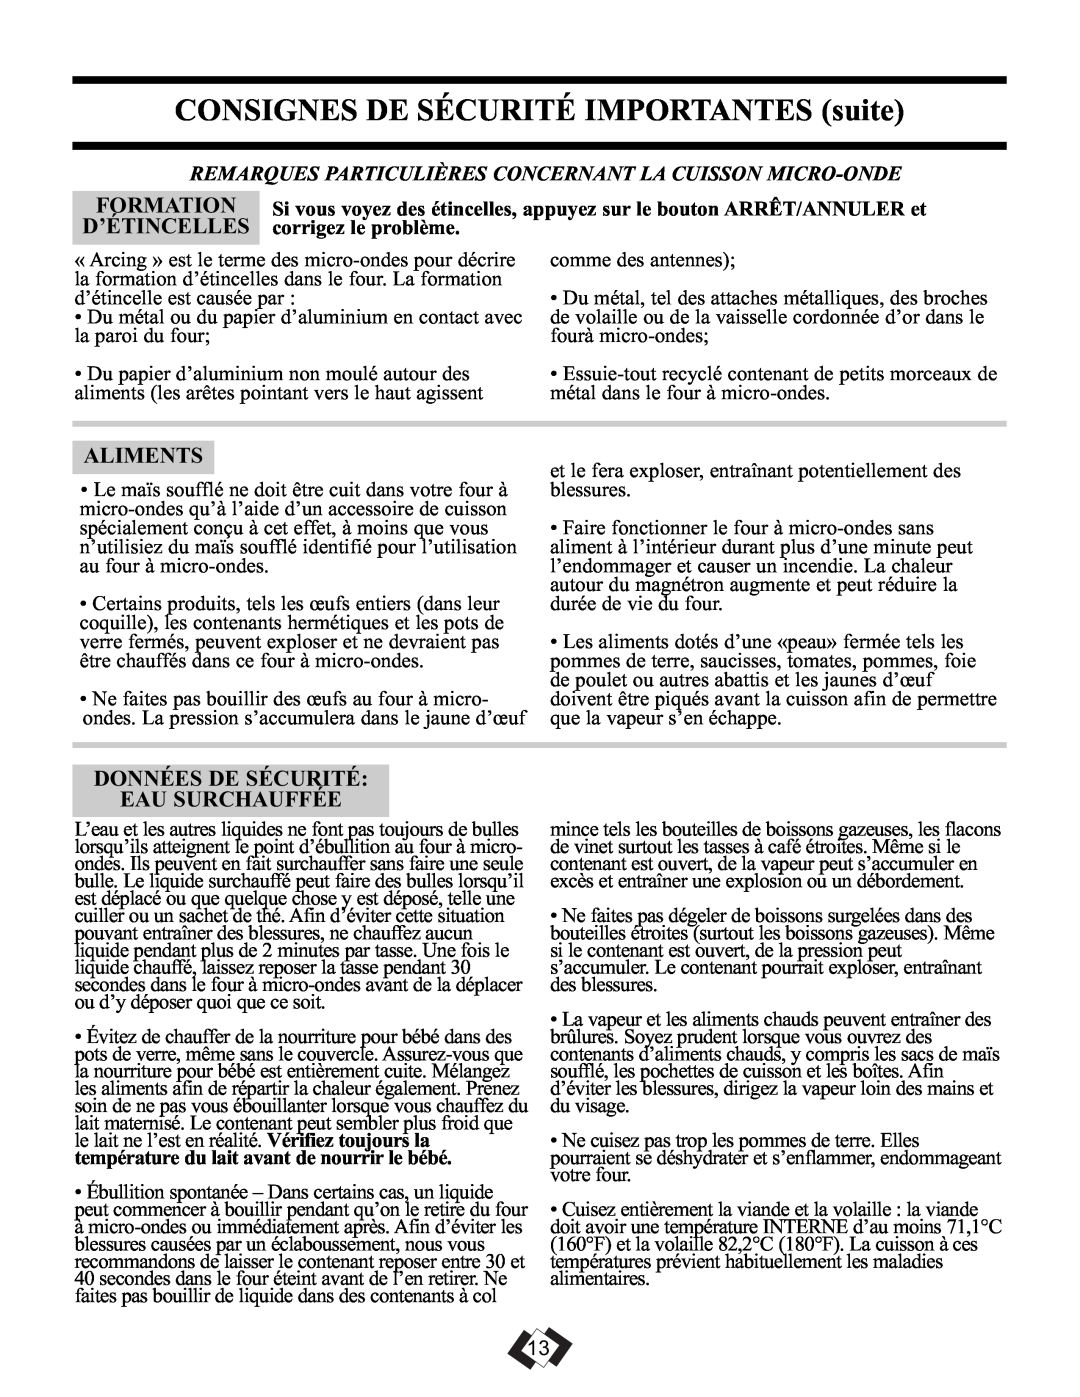 Sunbeam SBMW1049SS warranty CONSIGNES DE SÉCURITÉ IMPORTANTES suite, Formation, D’Étincelles, Aliments 